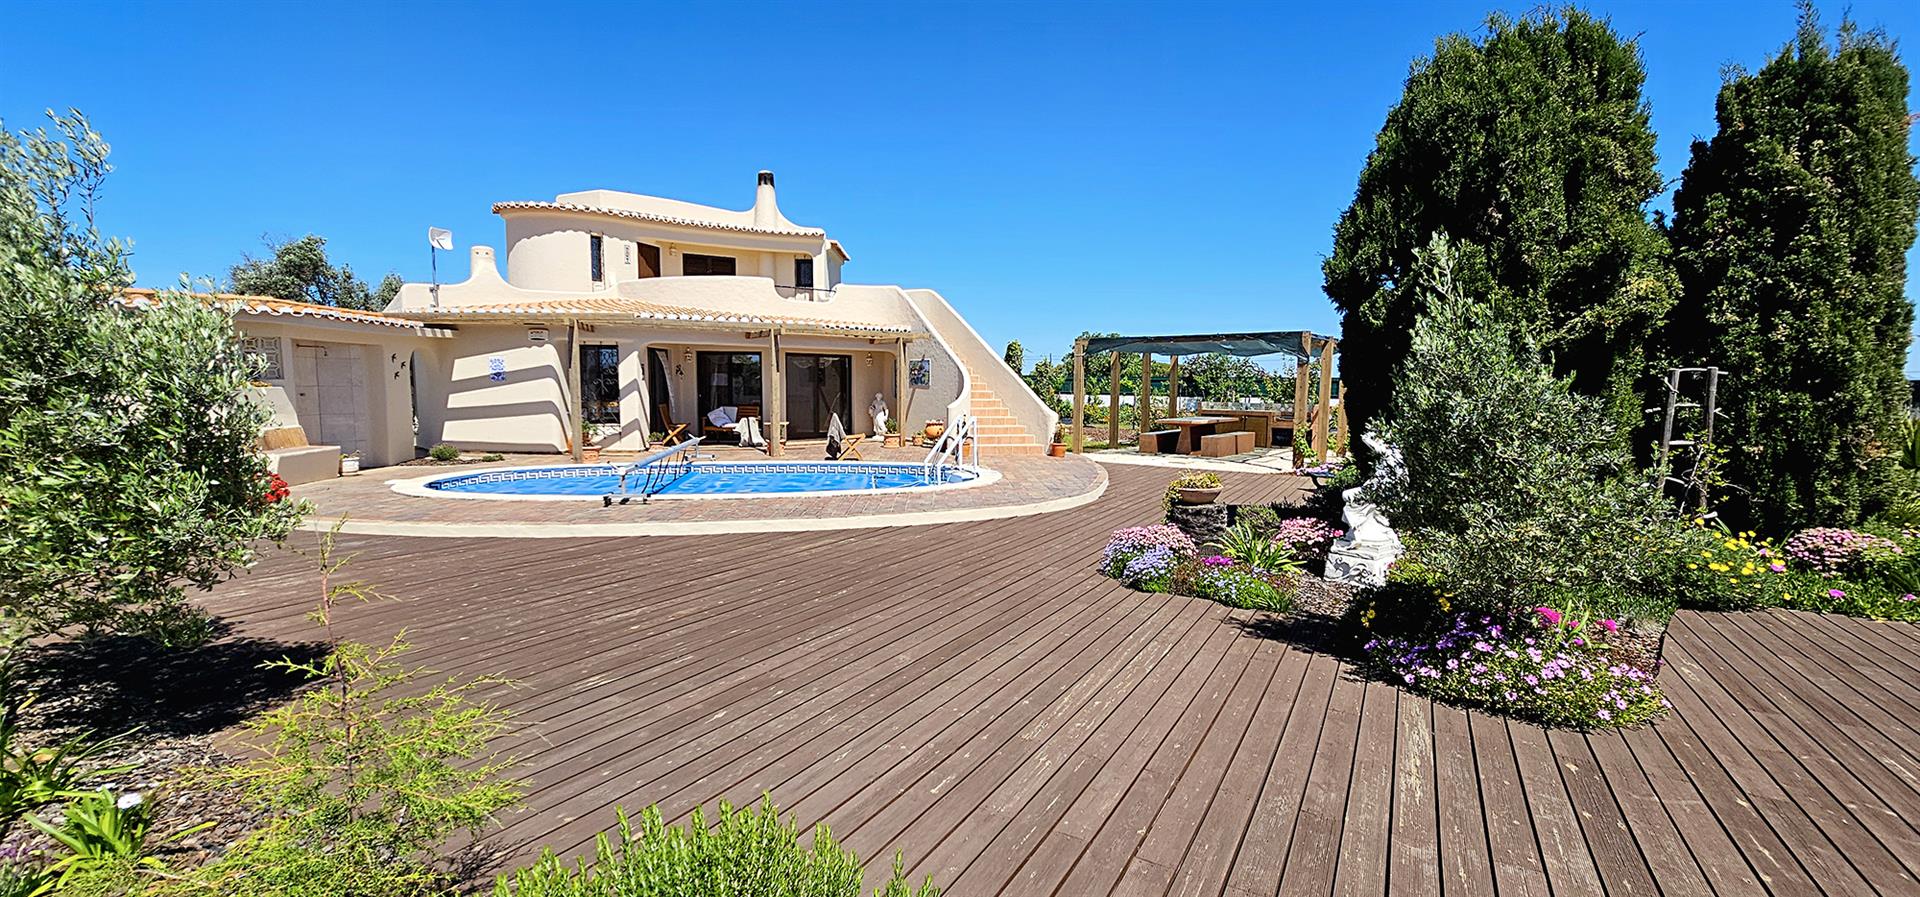 Välkommen till ditt framtida hem i vackra Algarve